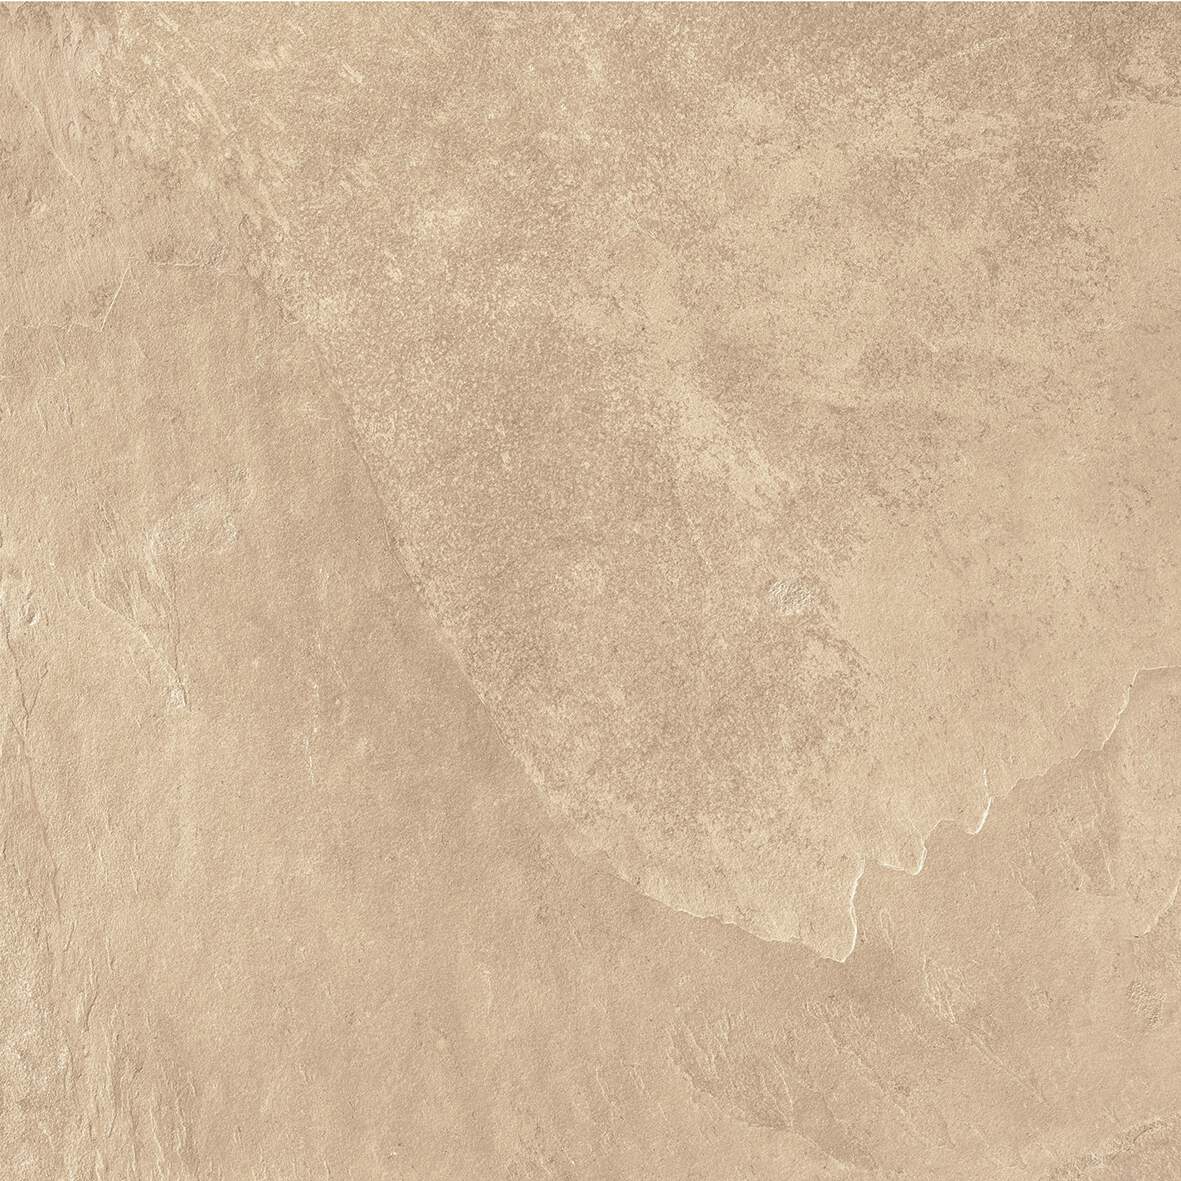 1281184 - Ardesia beige 59,5x59,5x2cm Keramische Platte